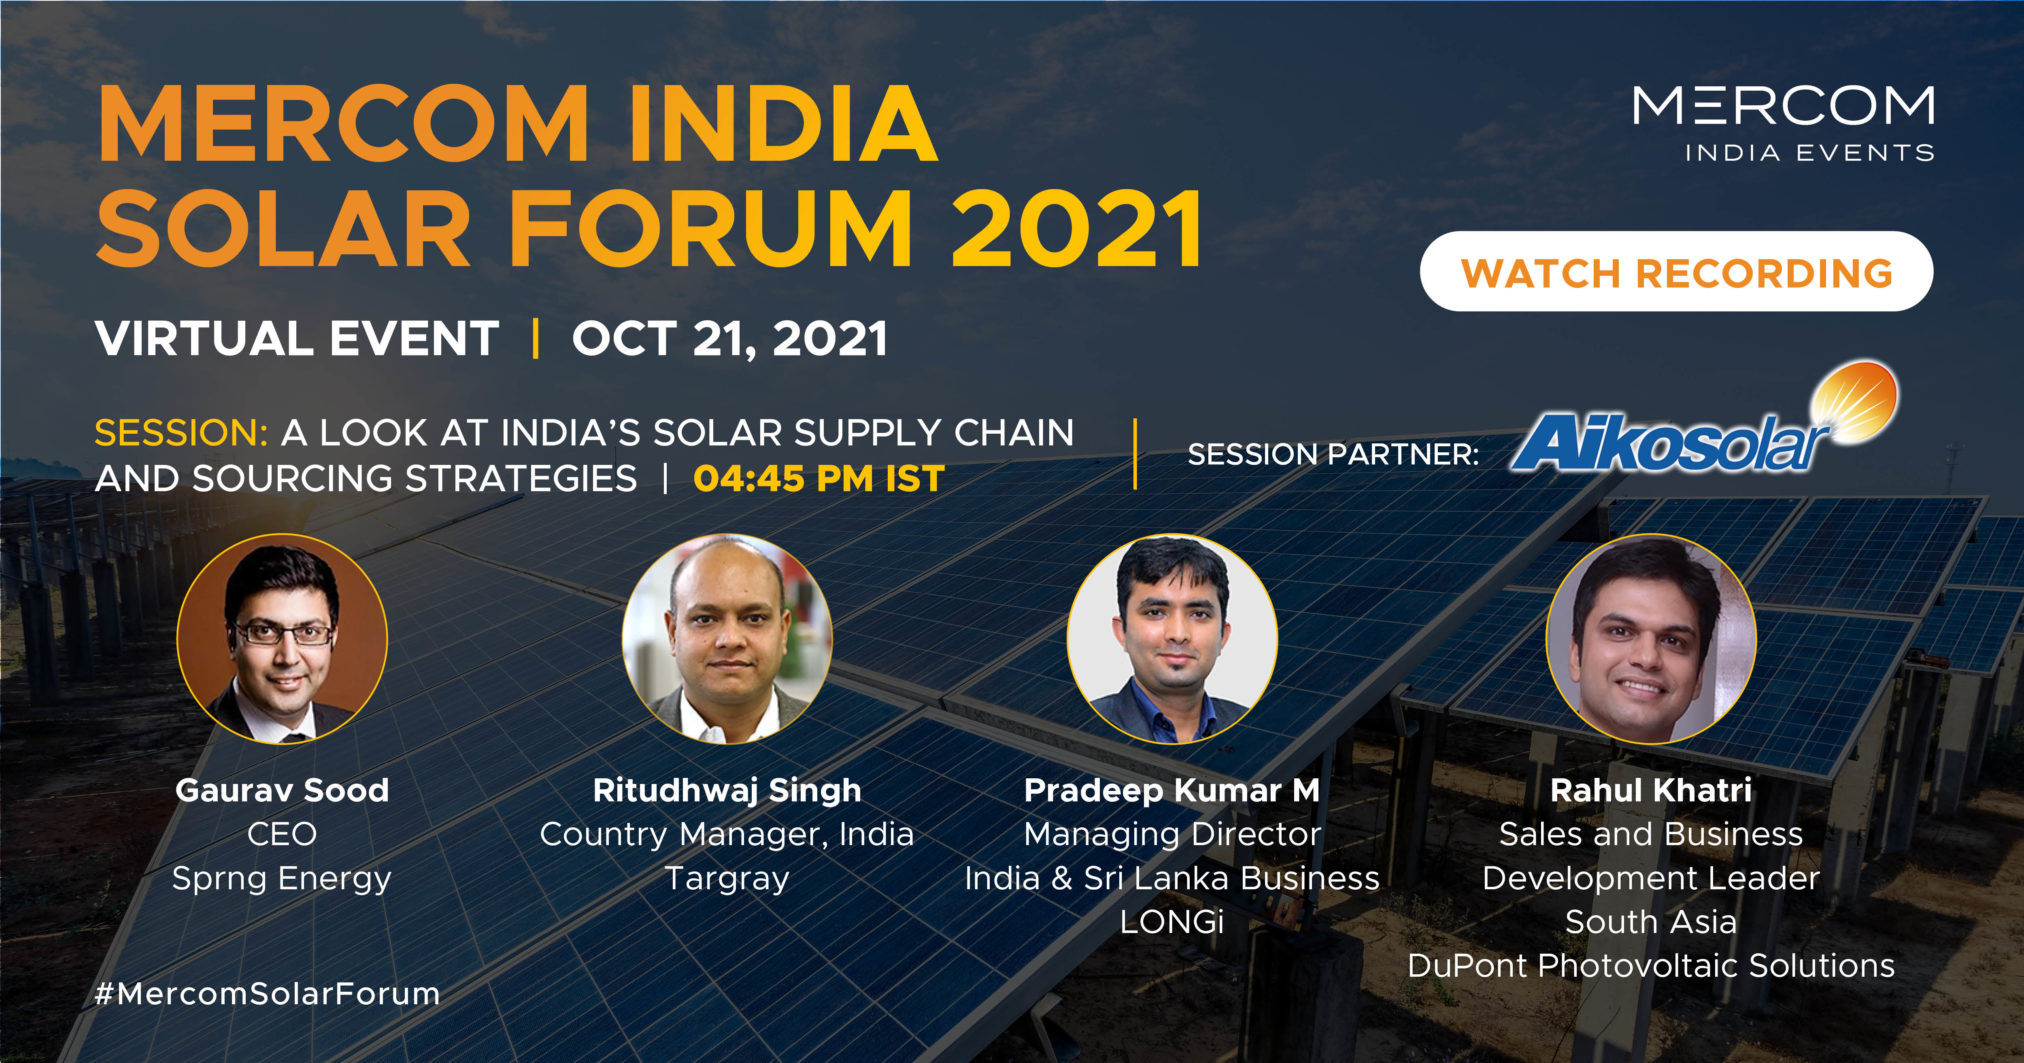 MERCOM Solar India Form 2021